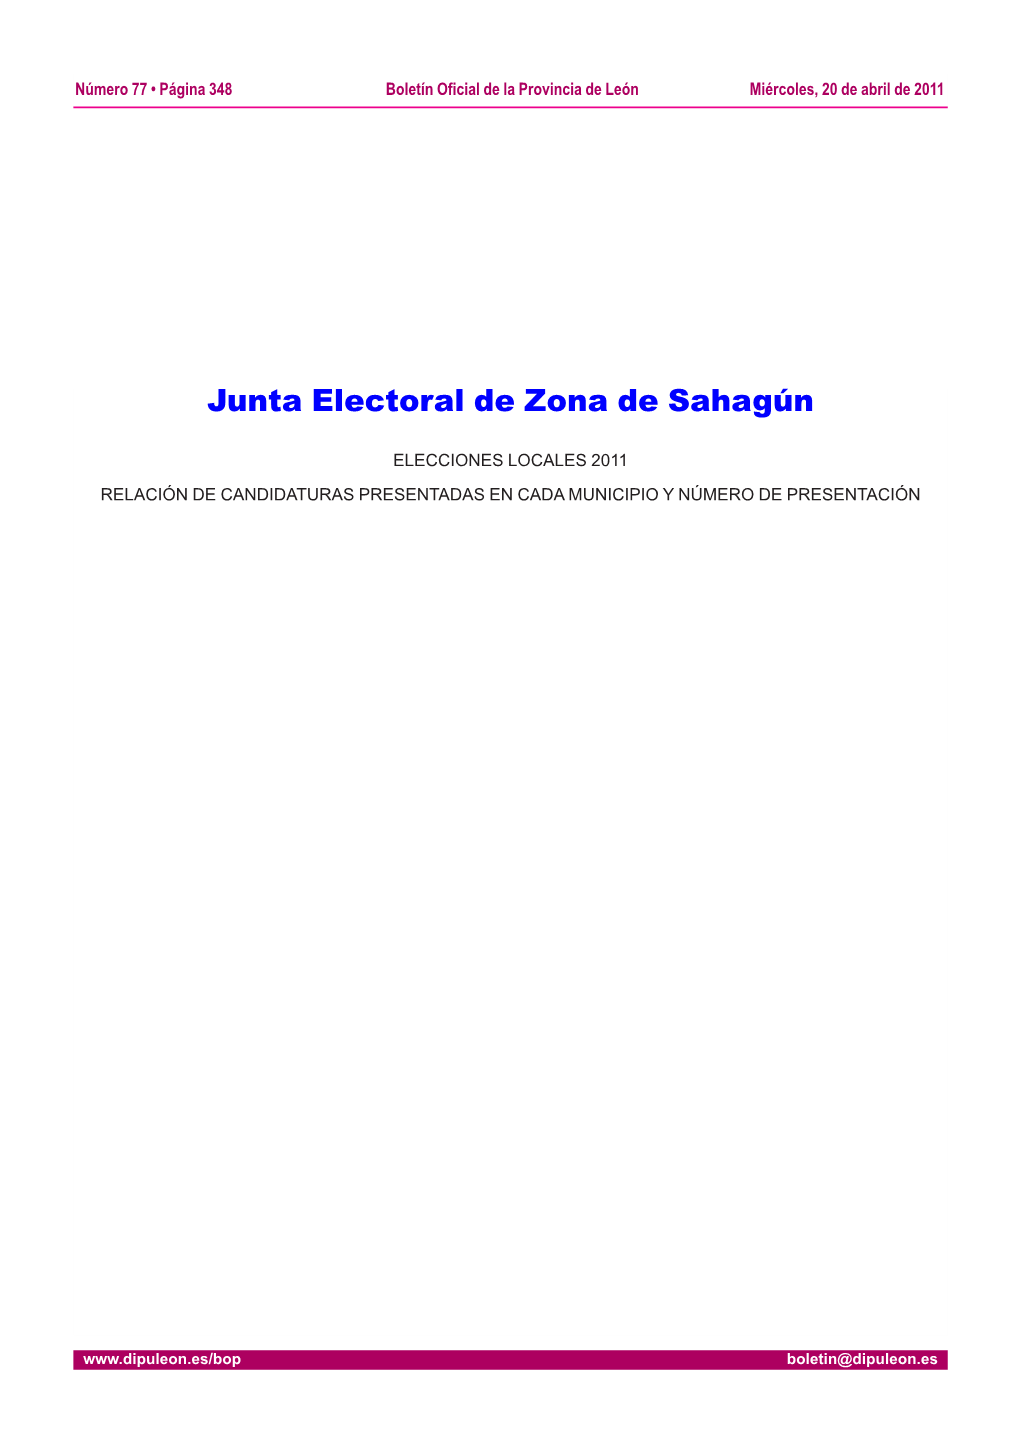 Junta Electoral De Zona De Sahagún